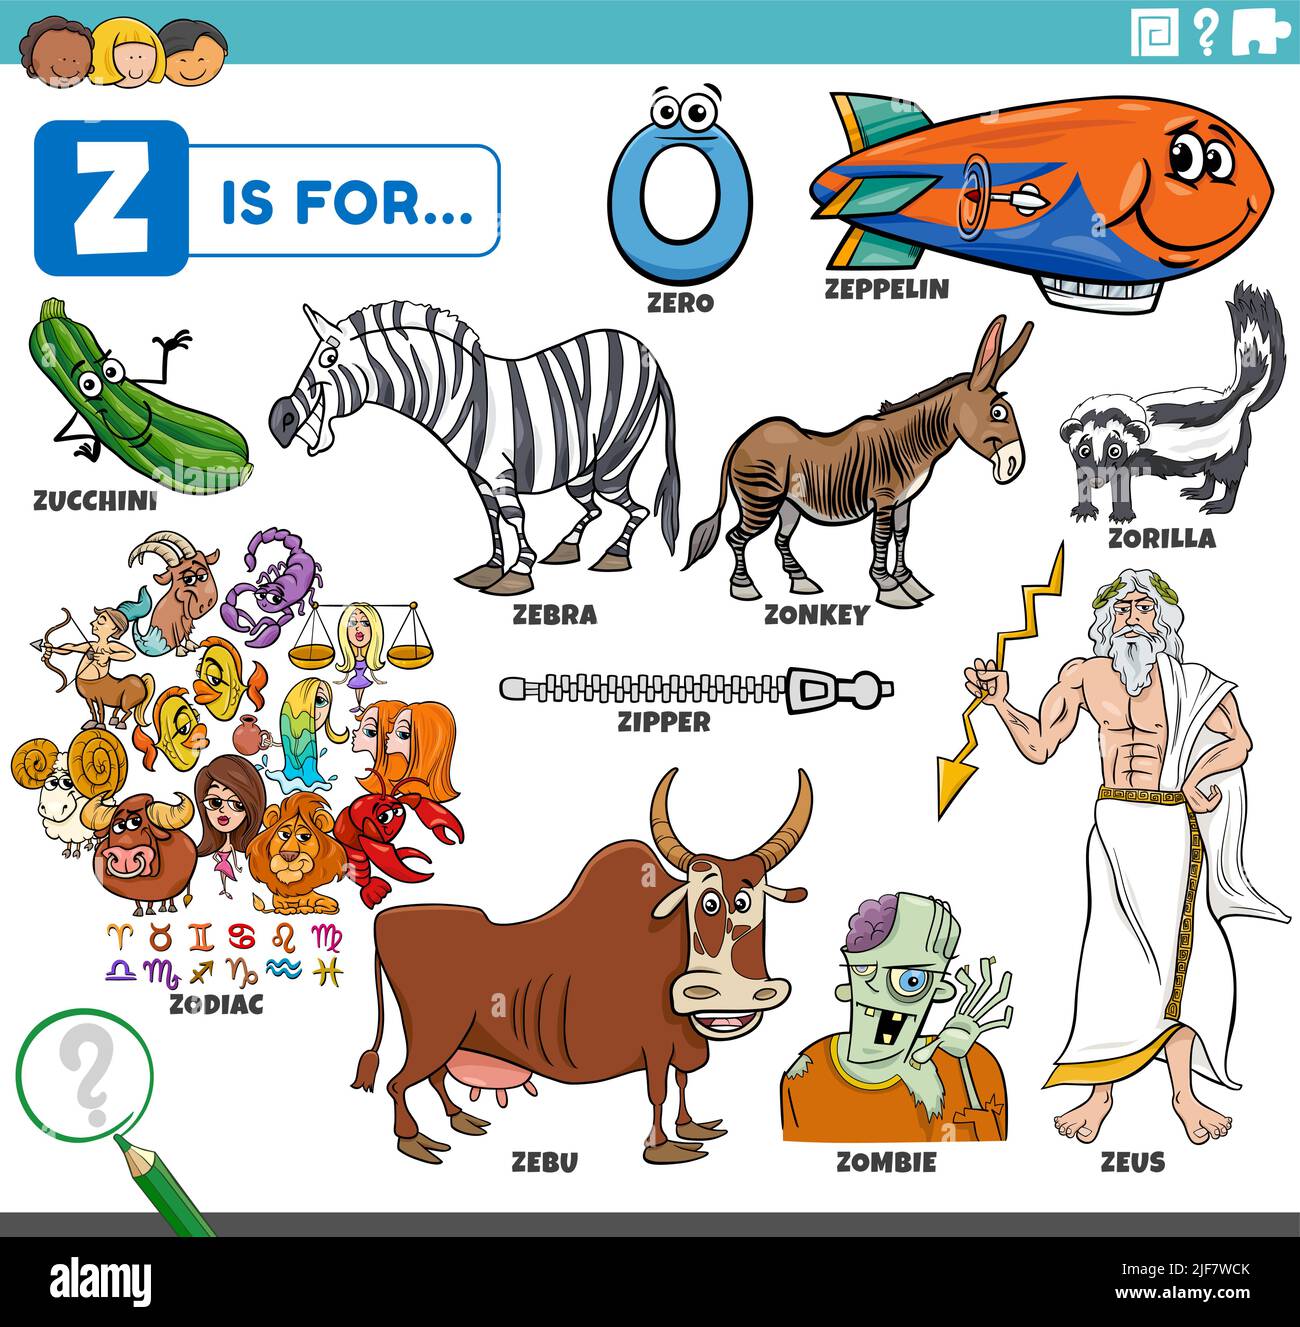 Illustrazione di fumetto educativa per bambini con personaggi fumetti e oggetti impostati per la lettera Z Illustrazione Vettoriale